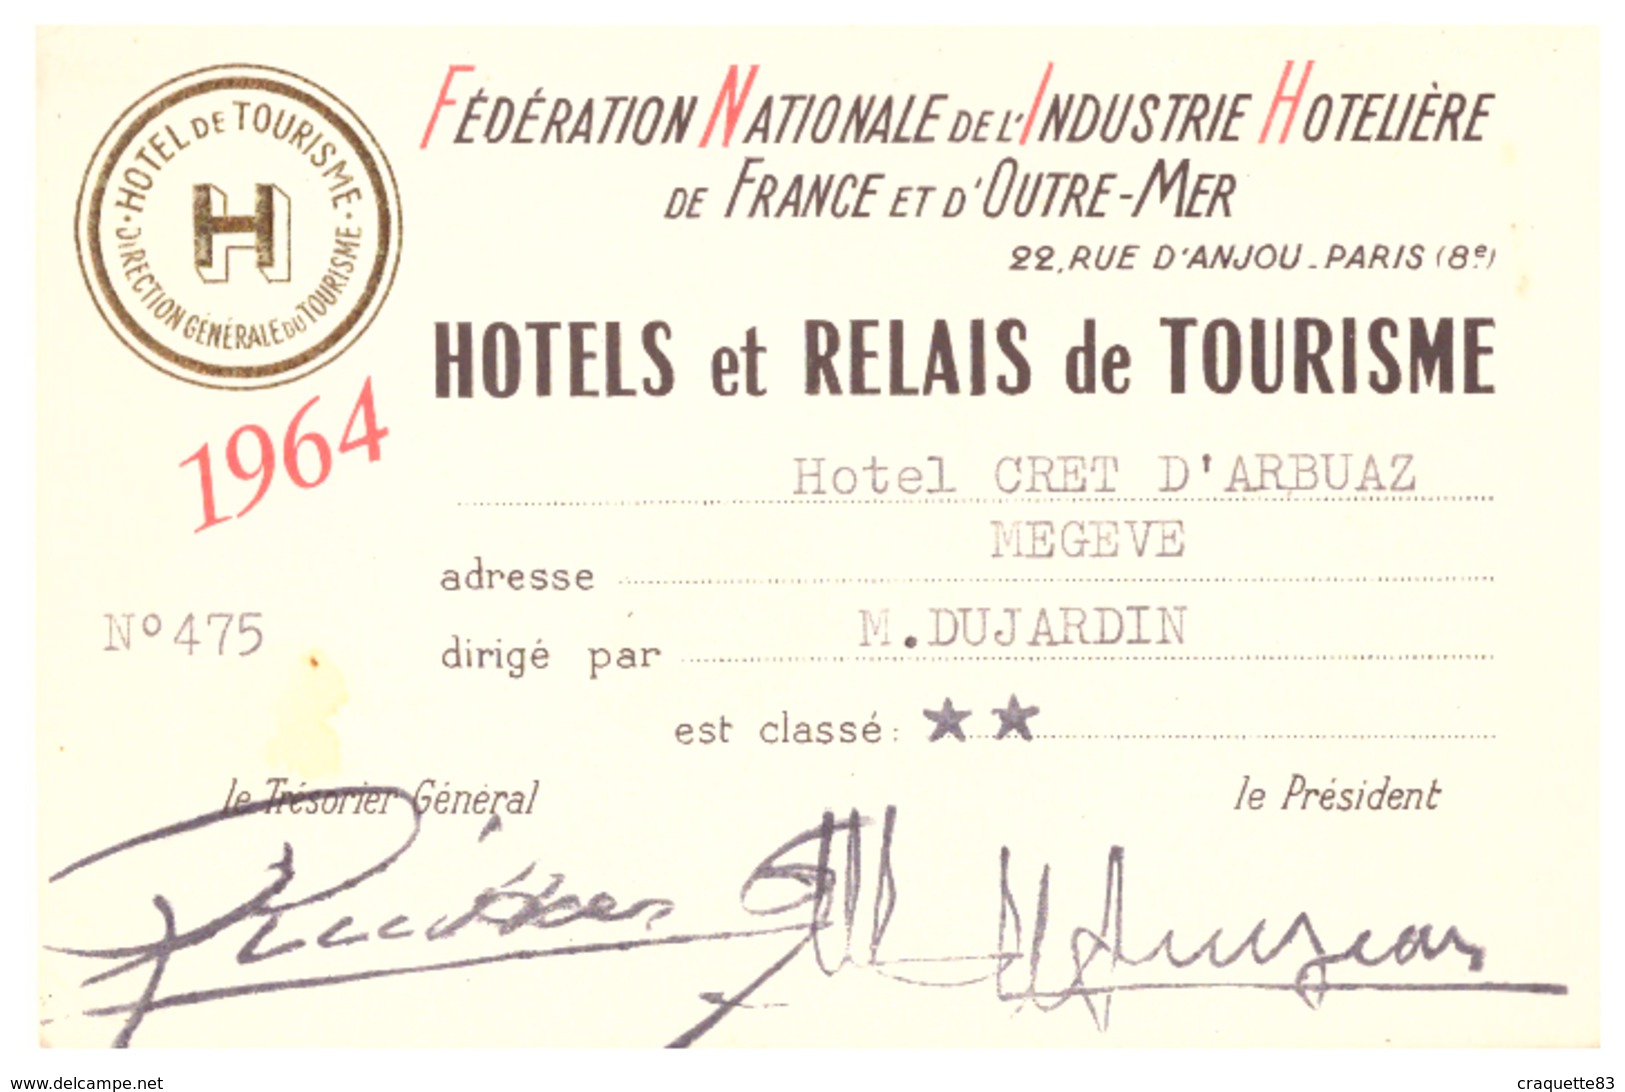 "HOTEL CRET D'ARBUAZ  MEGEVE-  1964- FEDERATION NATIONALE DE L'INDUSTRIE HOTELIERE DE FRANCE ET D'OUTRE-MER  N)475 - Visitenkarten